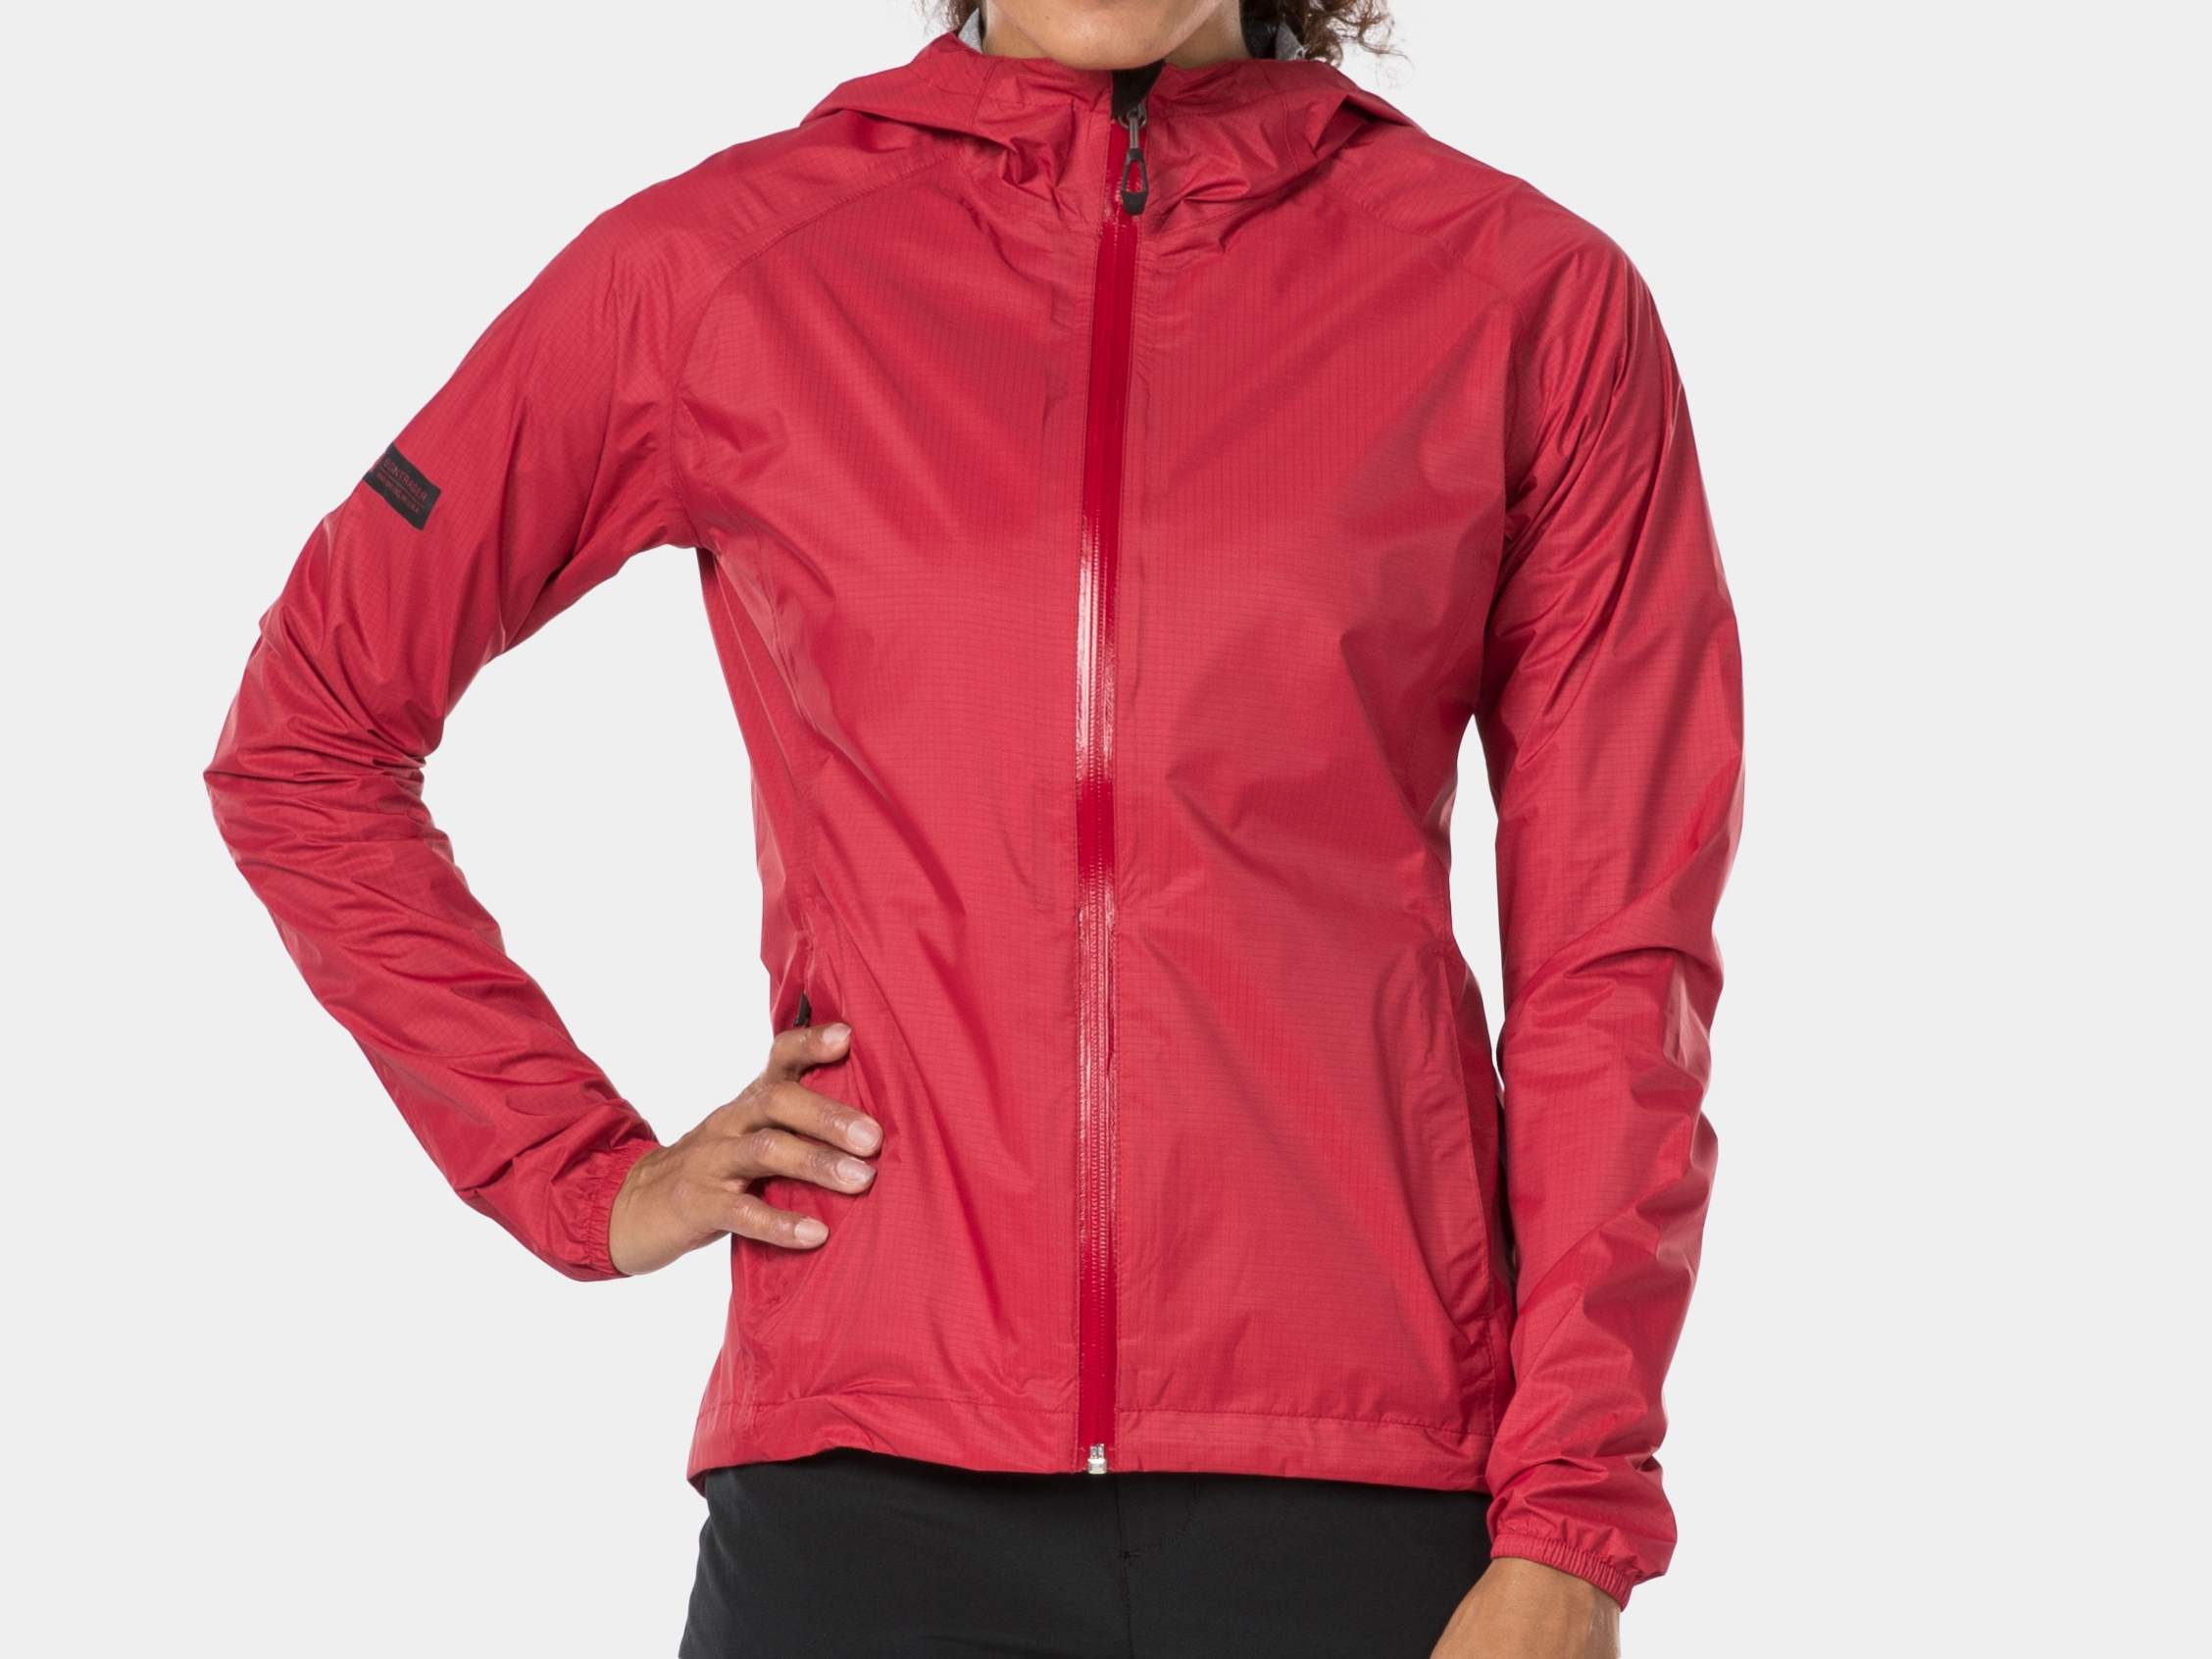 women's mountain bike jacket